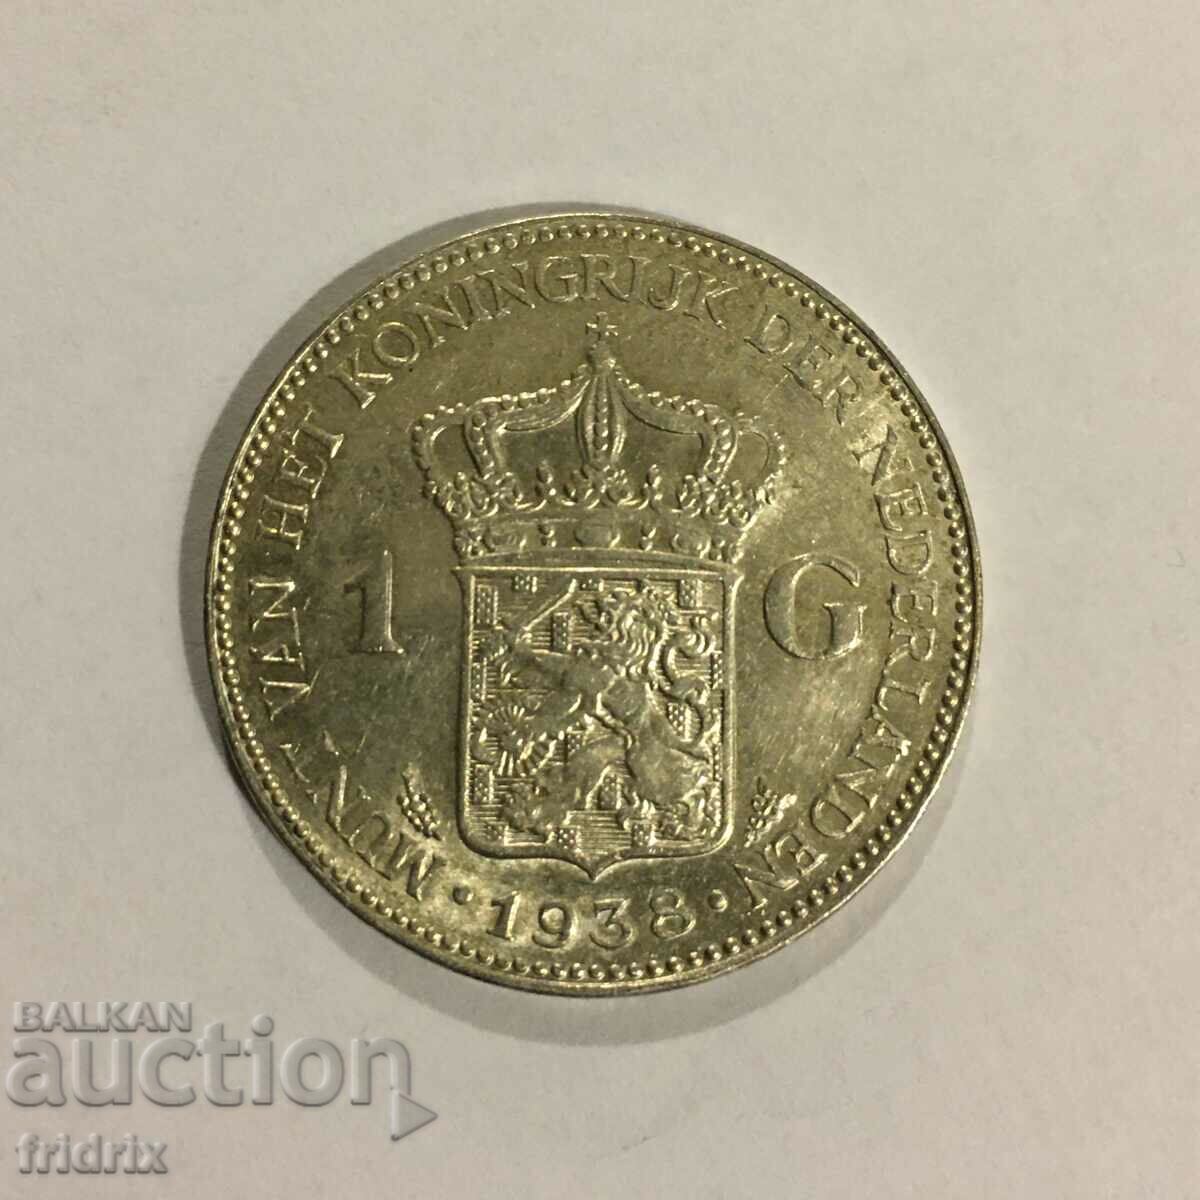 Țările de Jos 1 gulden 1938 / Olanda 1 gulden 1938 UNC